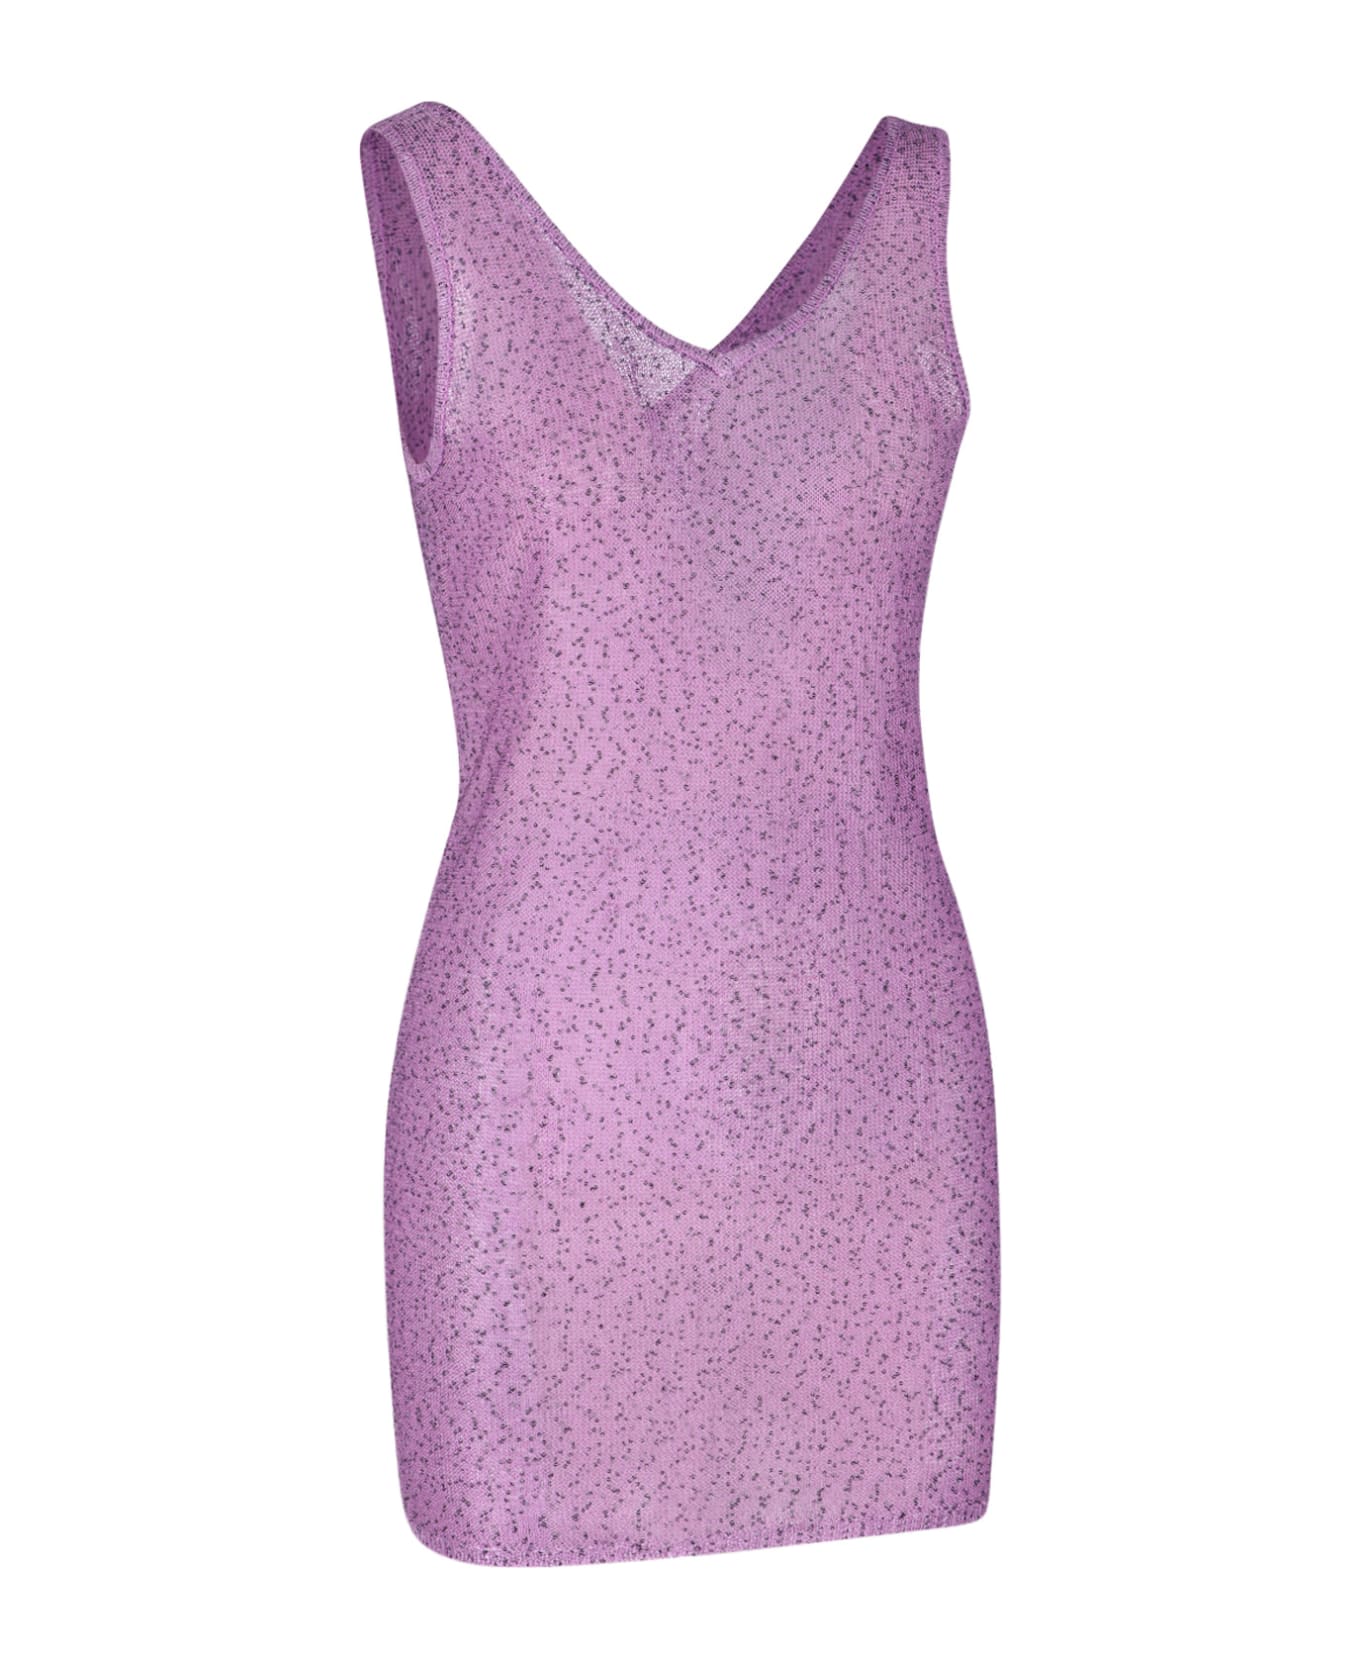 REMAIN Birger Christensen Sequins Top Dress - Purple